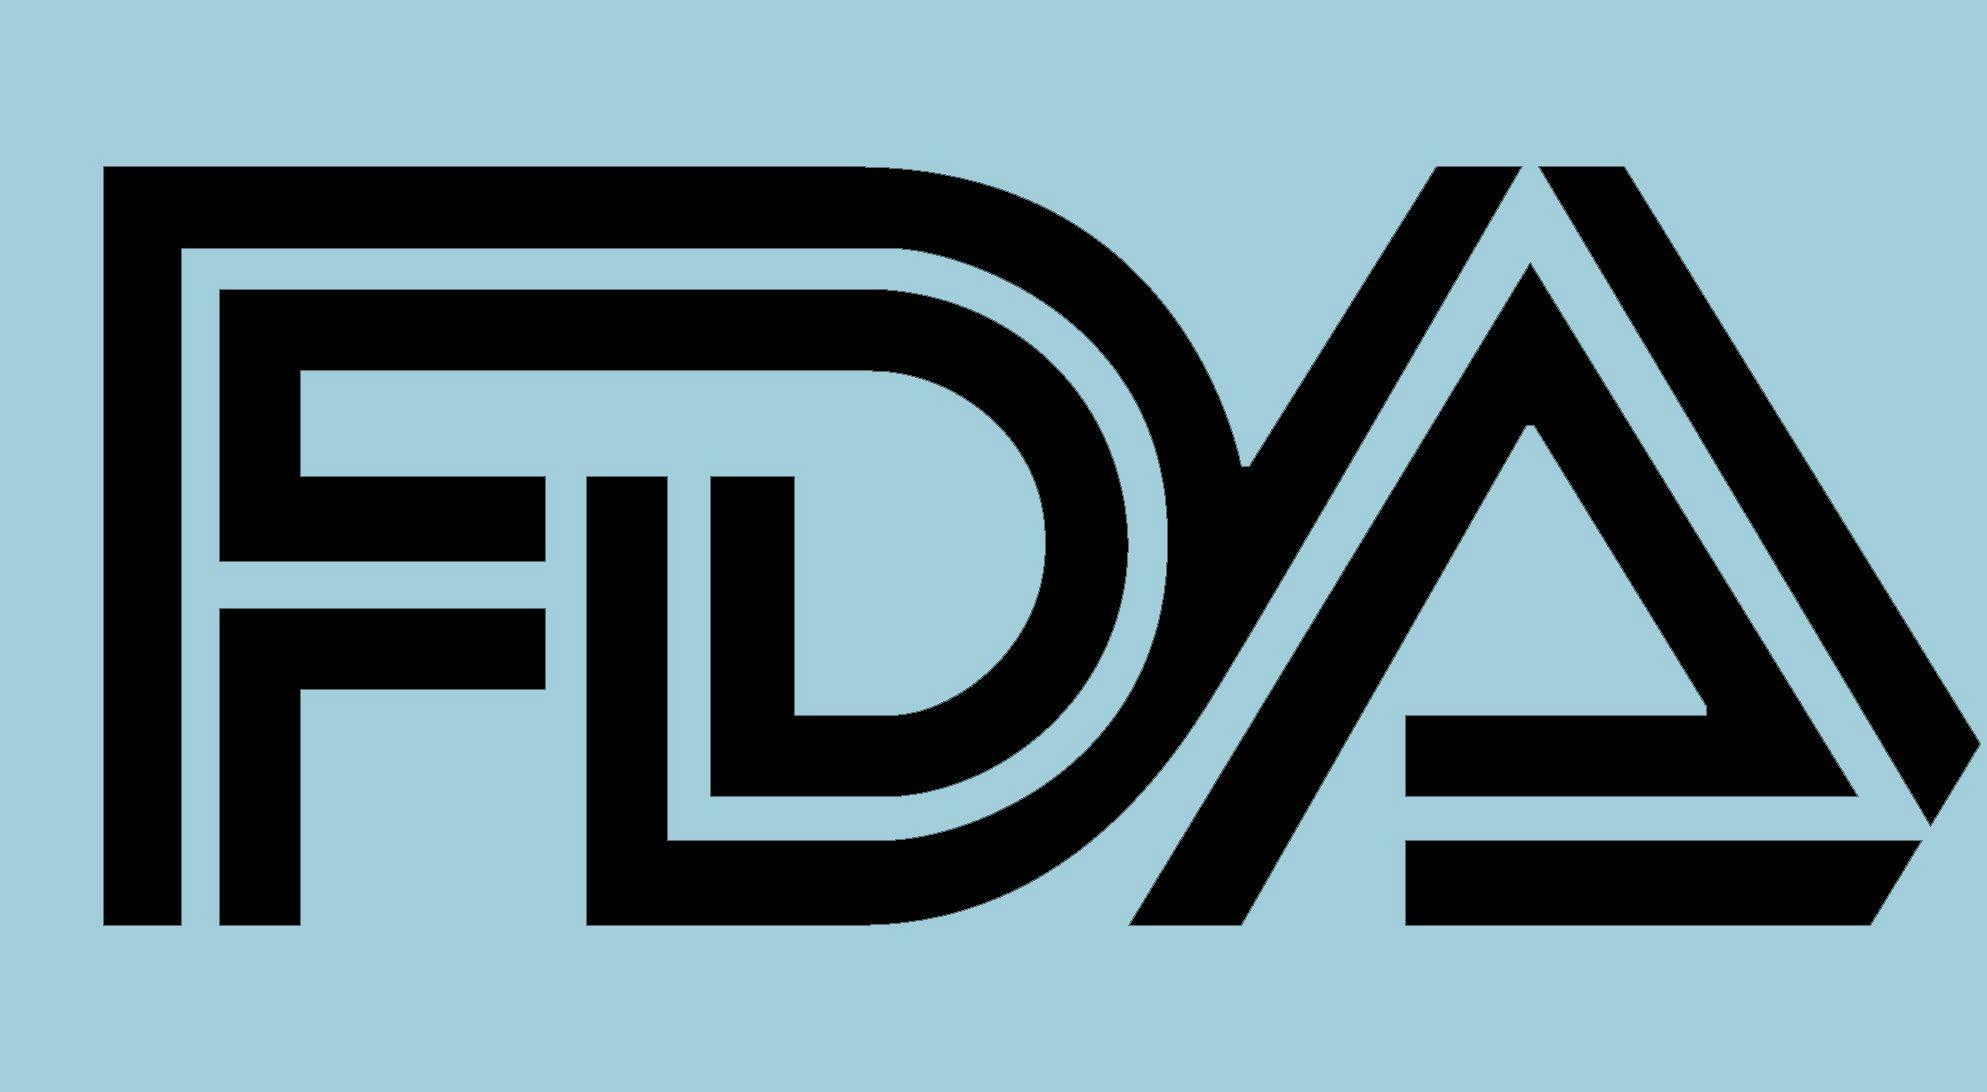 Image of FDA logo.